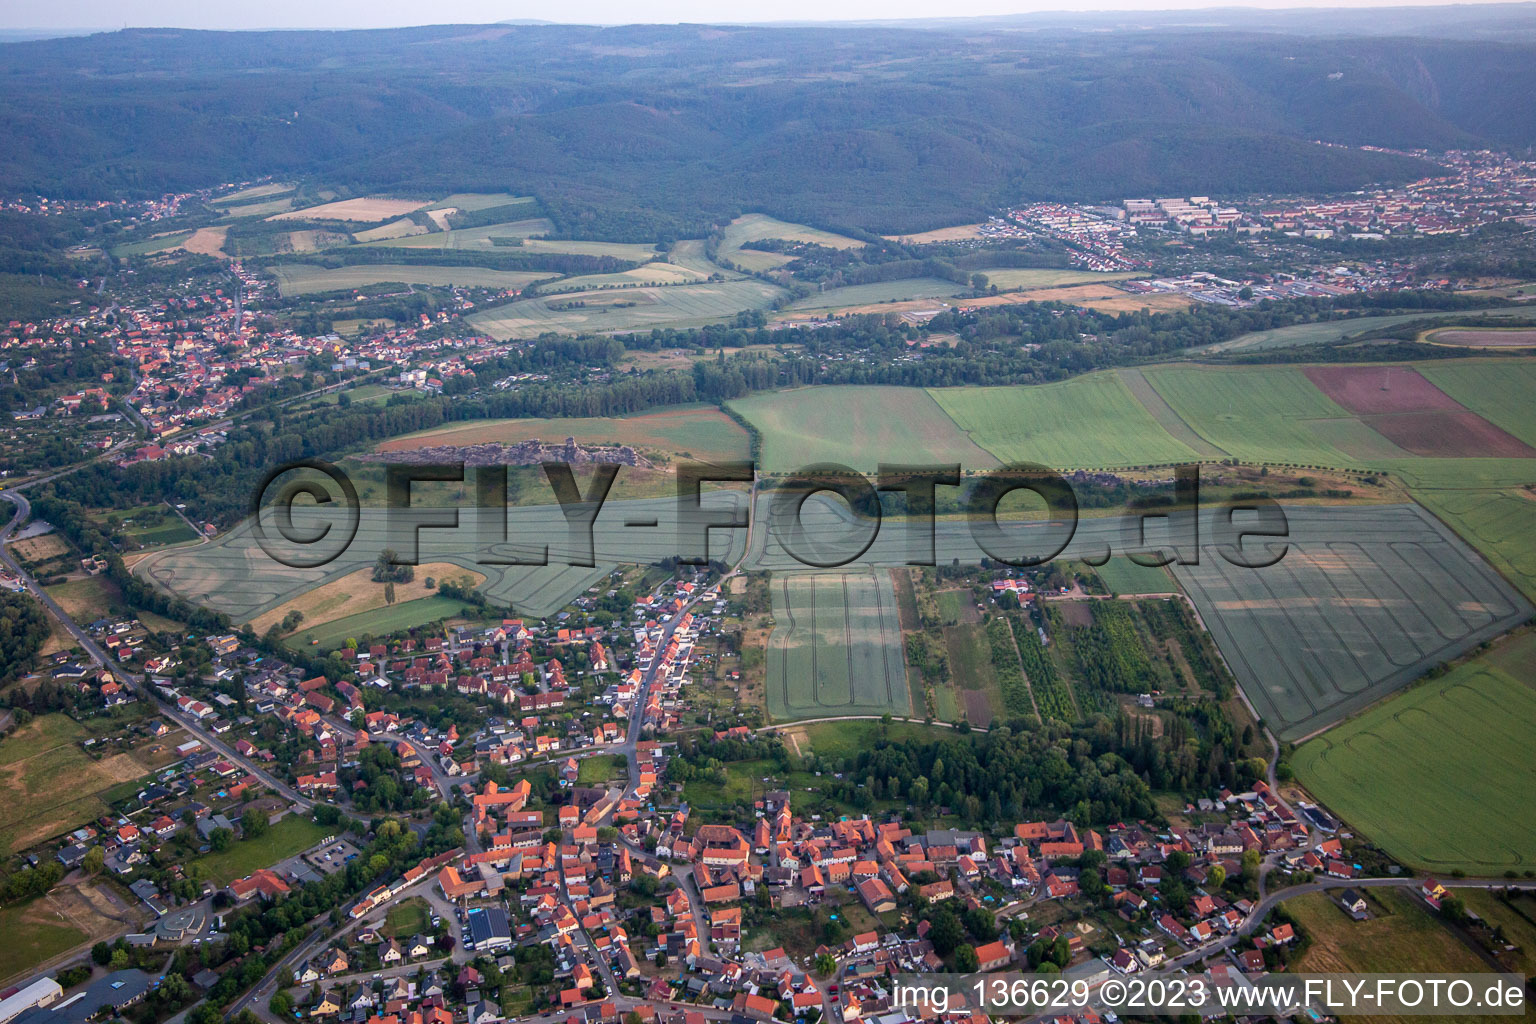 Vue aérienne de Mur du Diable (Königsstein) depuis le nord à le quartier Weddersleben in Thale dans le département Saxe-Anhalt, Allemagne